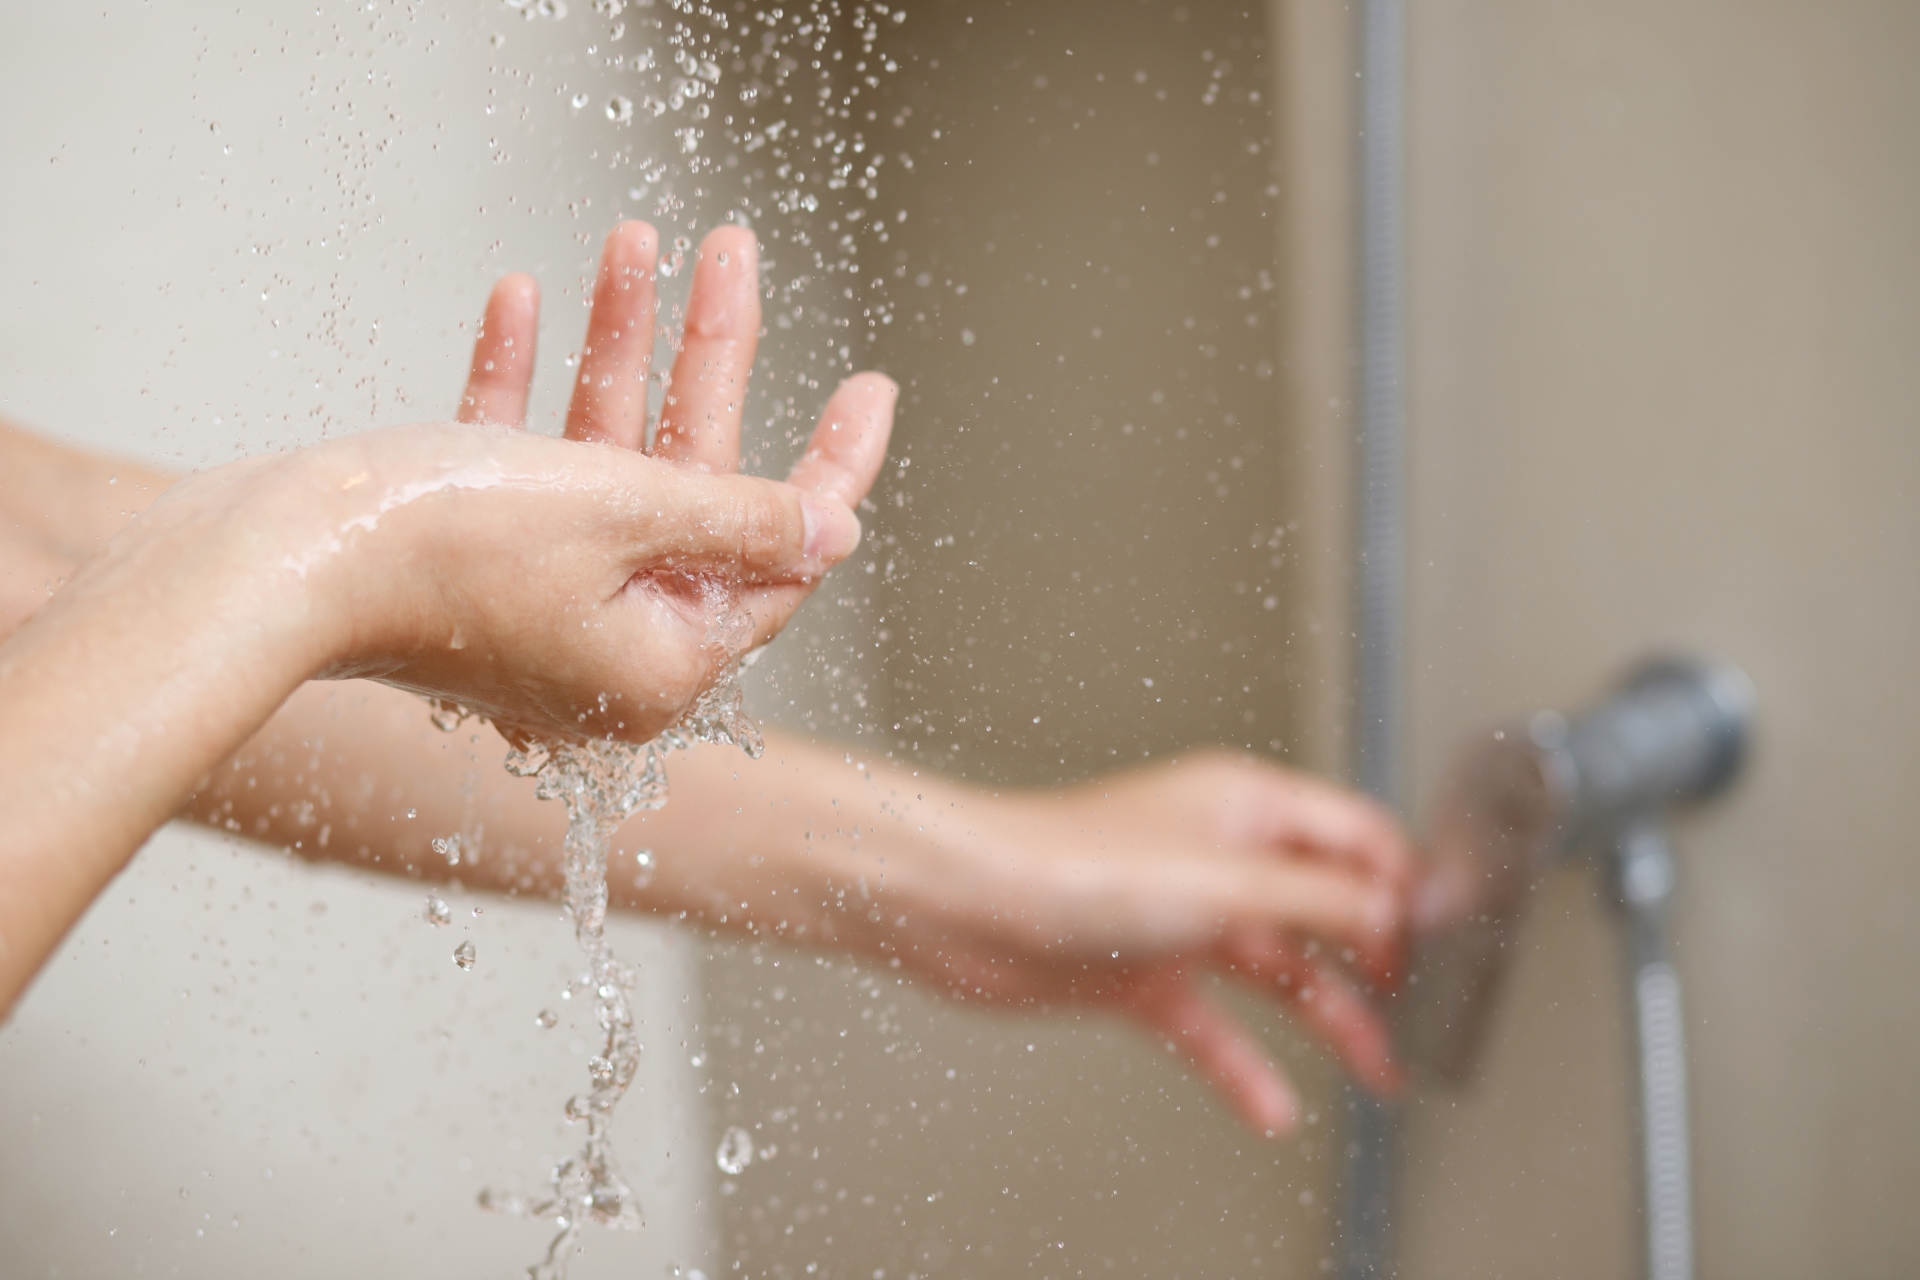 mulher abrindo o registro de água de um chuveiro para tomar banho